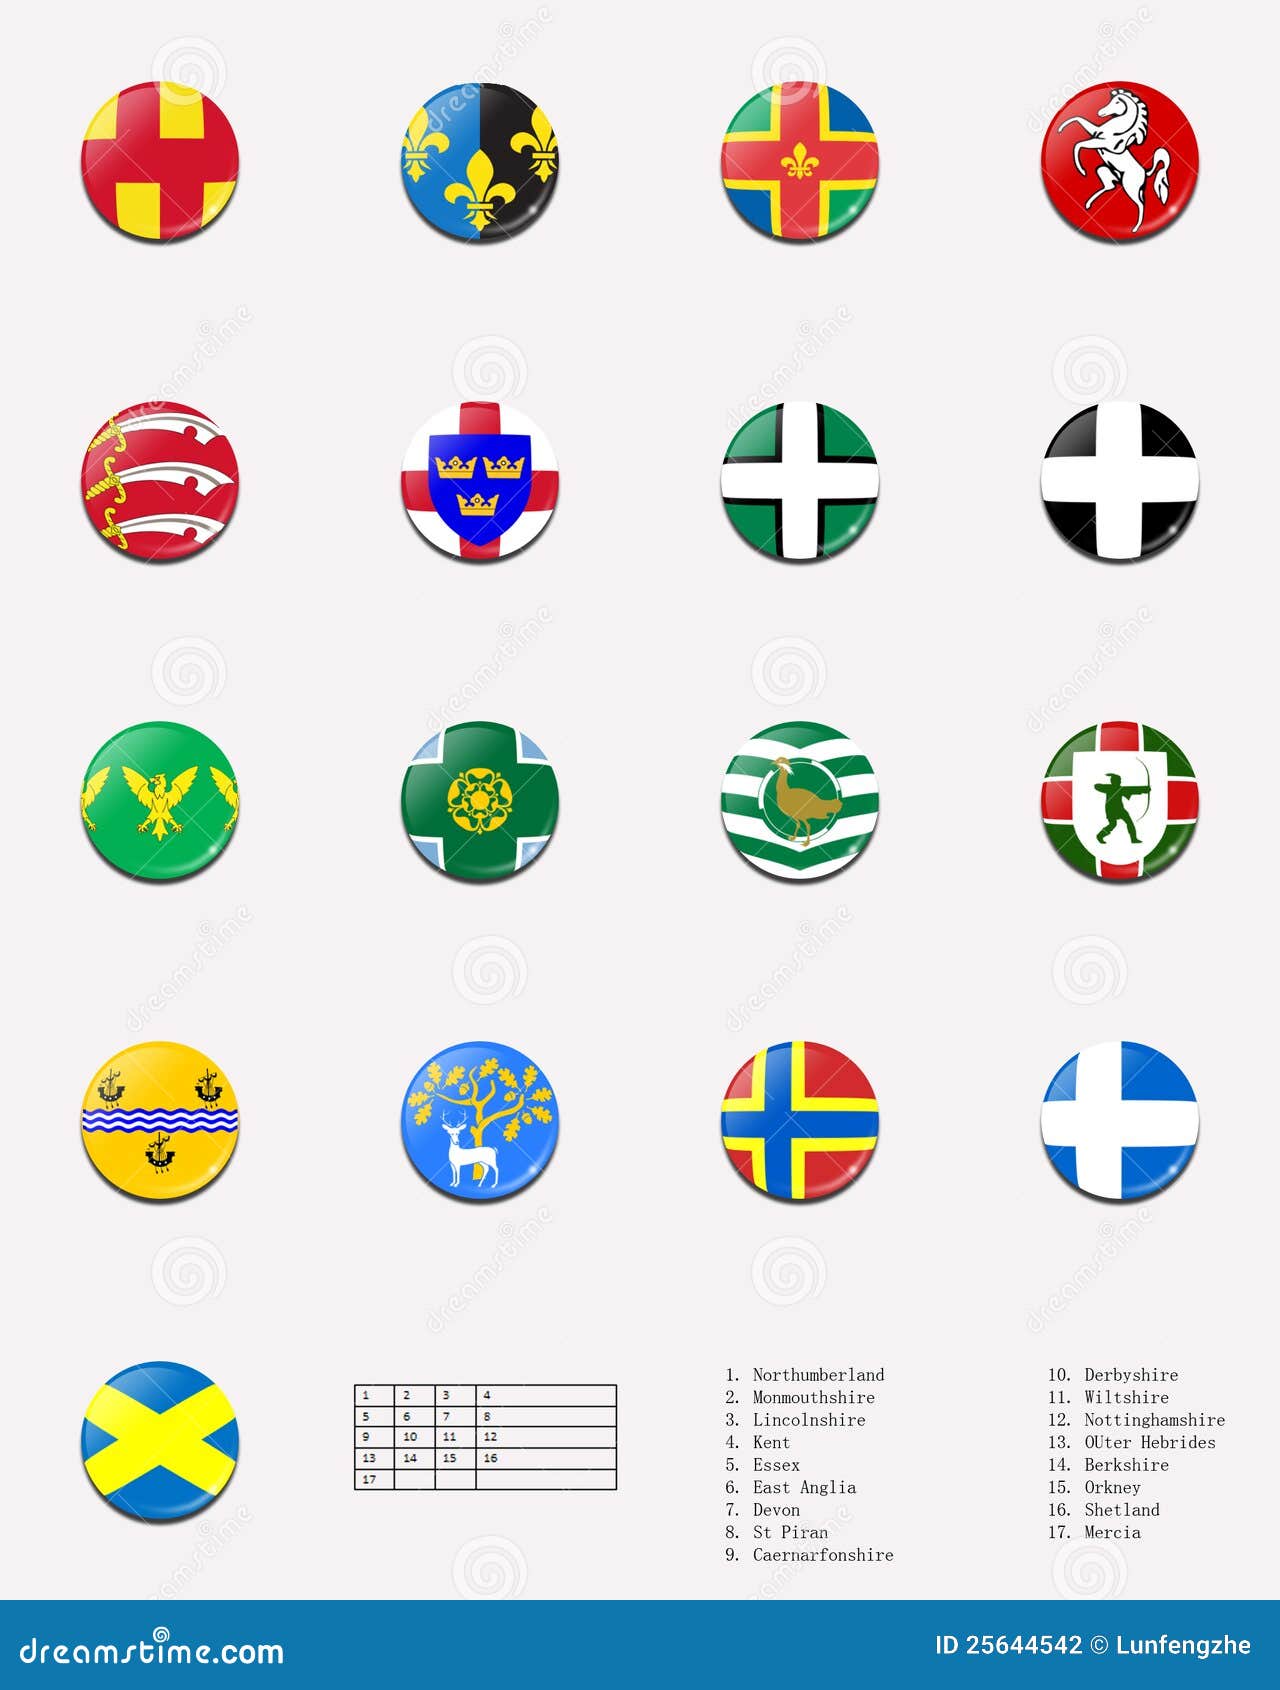 (1) 2 balowa miast flaga regionalność uk. Balowi miasta zaznaczają królestwa obrazek co do regionalności jednoczącej